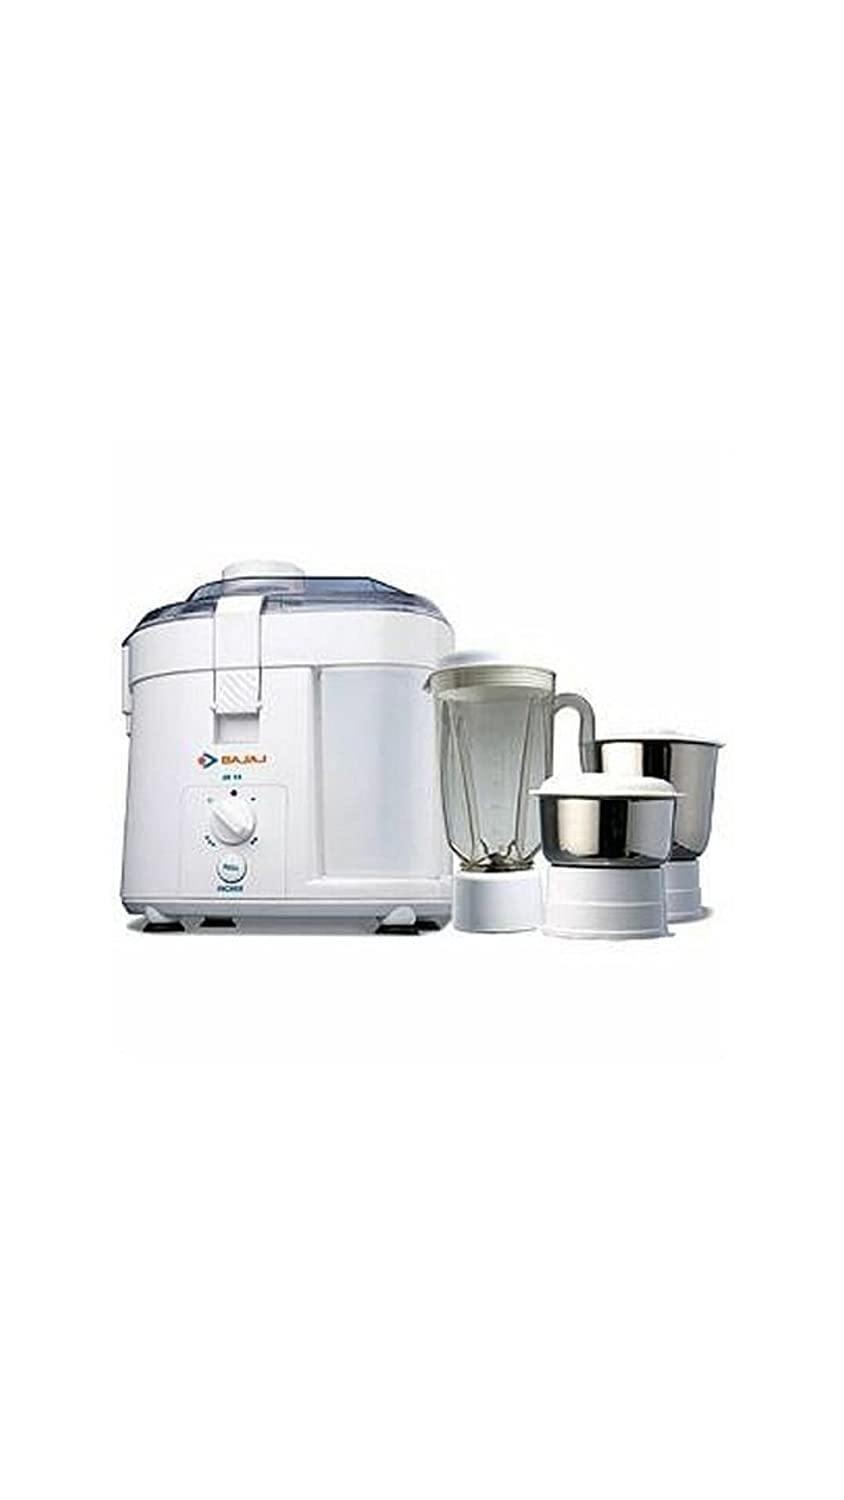 Bajaj JX10 Mixer Grinder with 3 Jars-Home & Kitchen Appliances-dealsplant